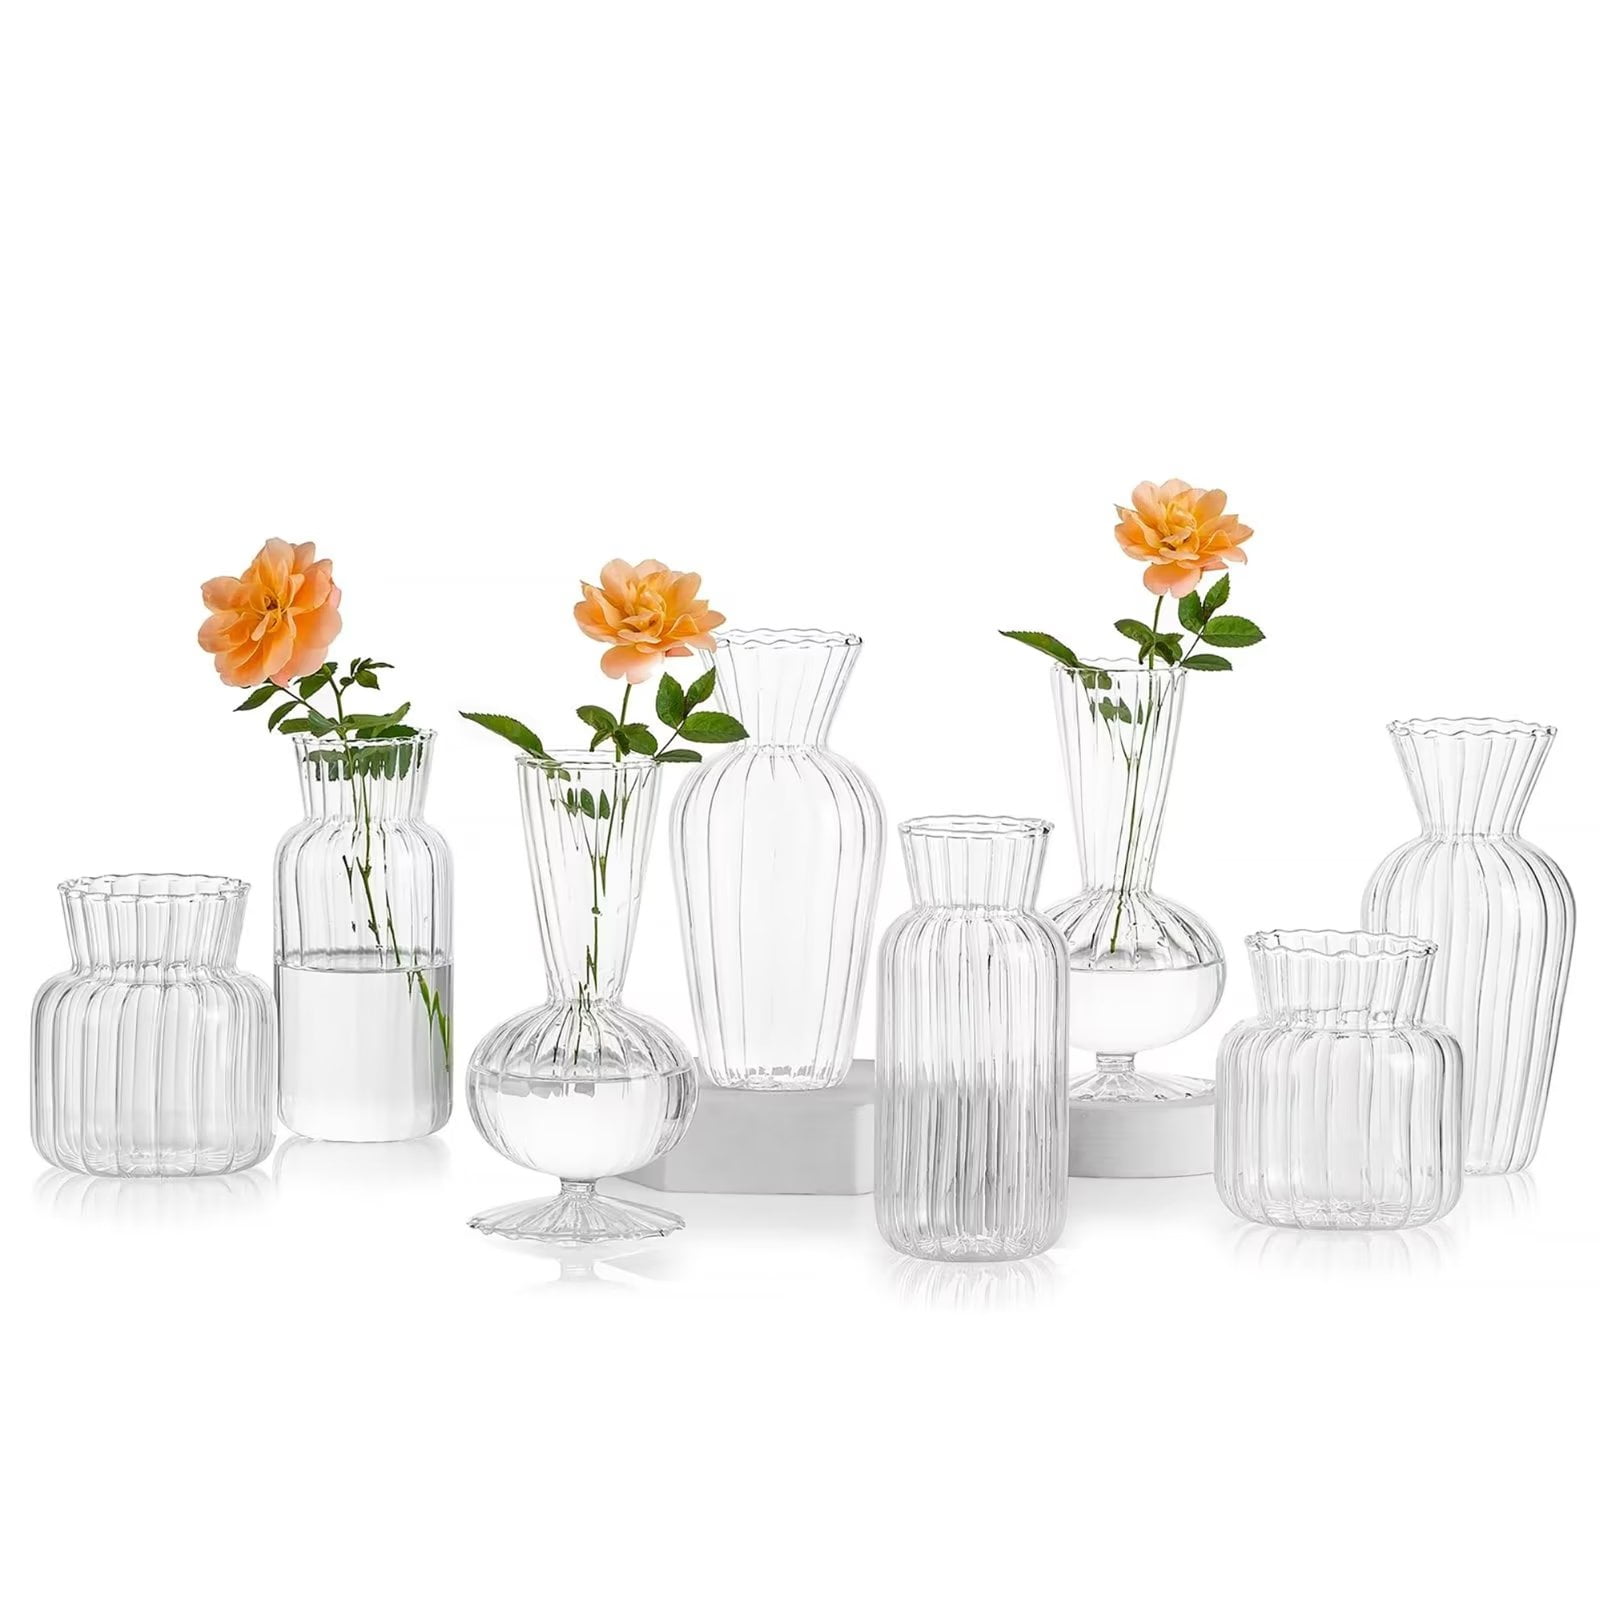 Small Bud Vase in Bulk Glass Optical Vases for Table Set of 8 - Walmart.com